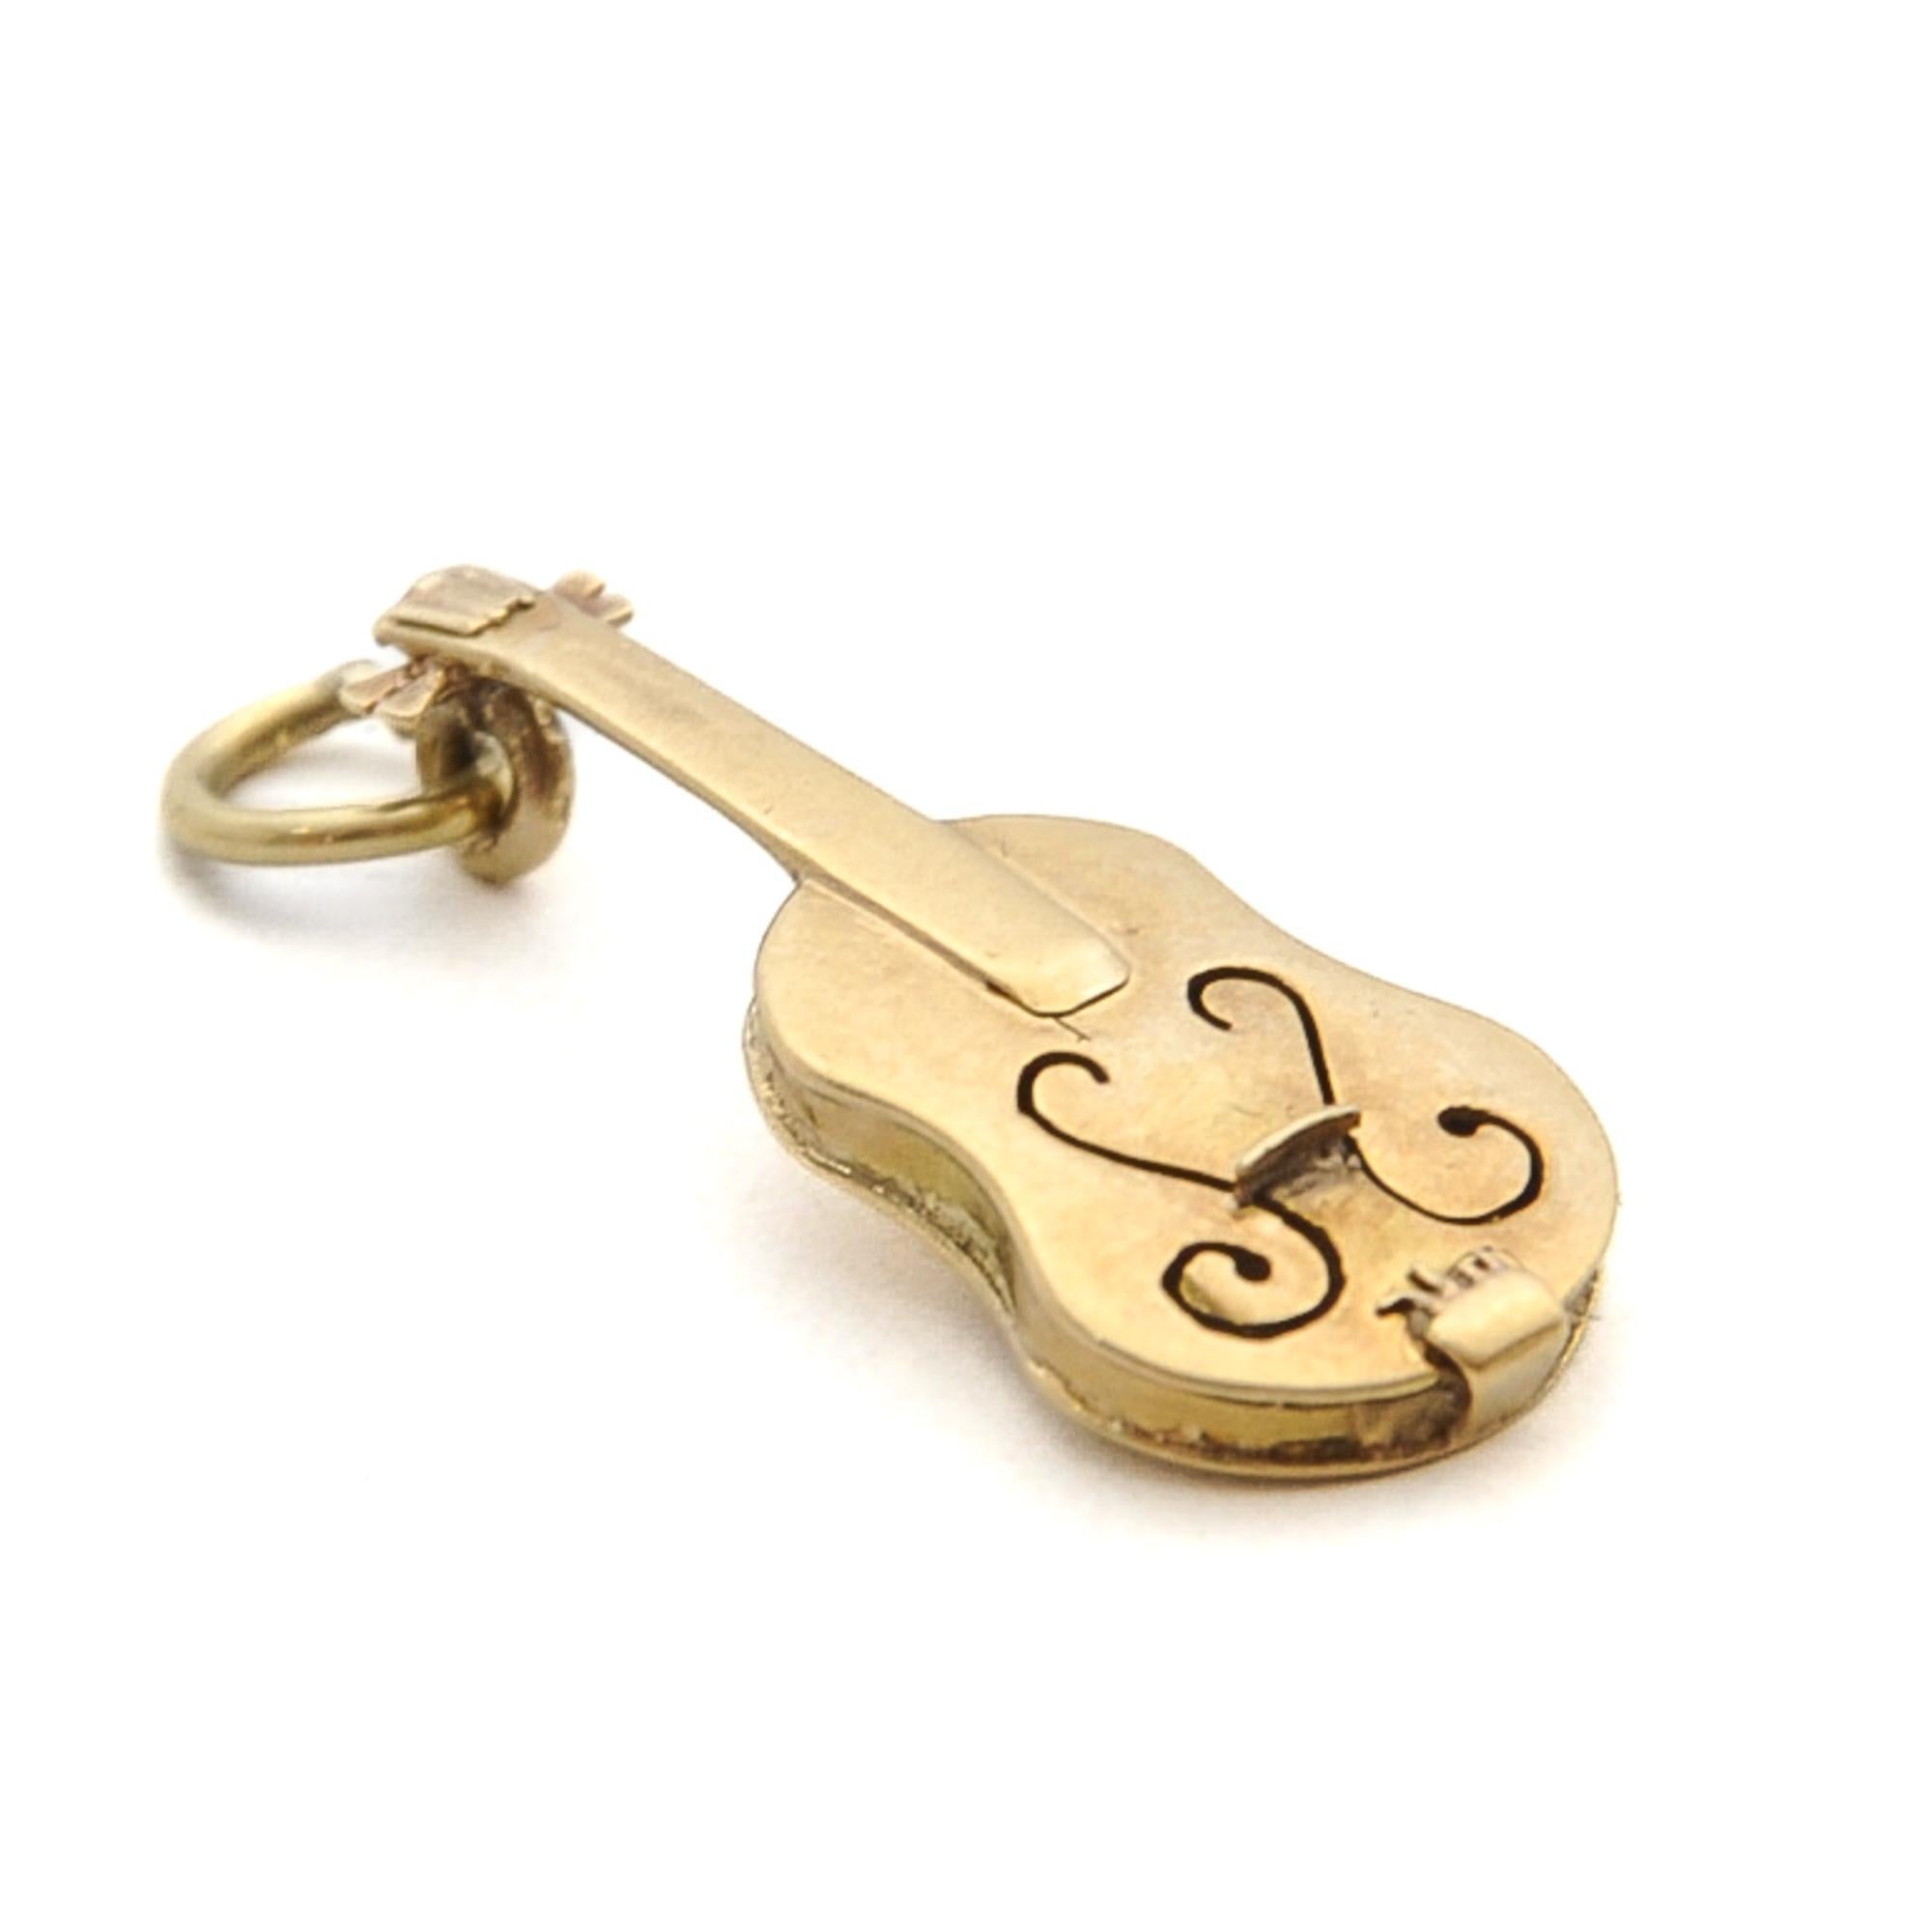 Vintage 14K Gold Violin Charm Pendant 2